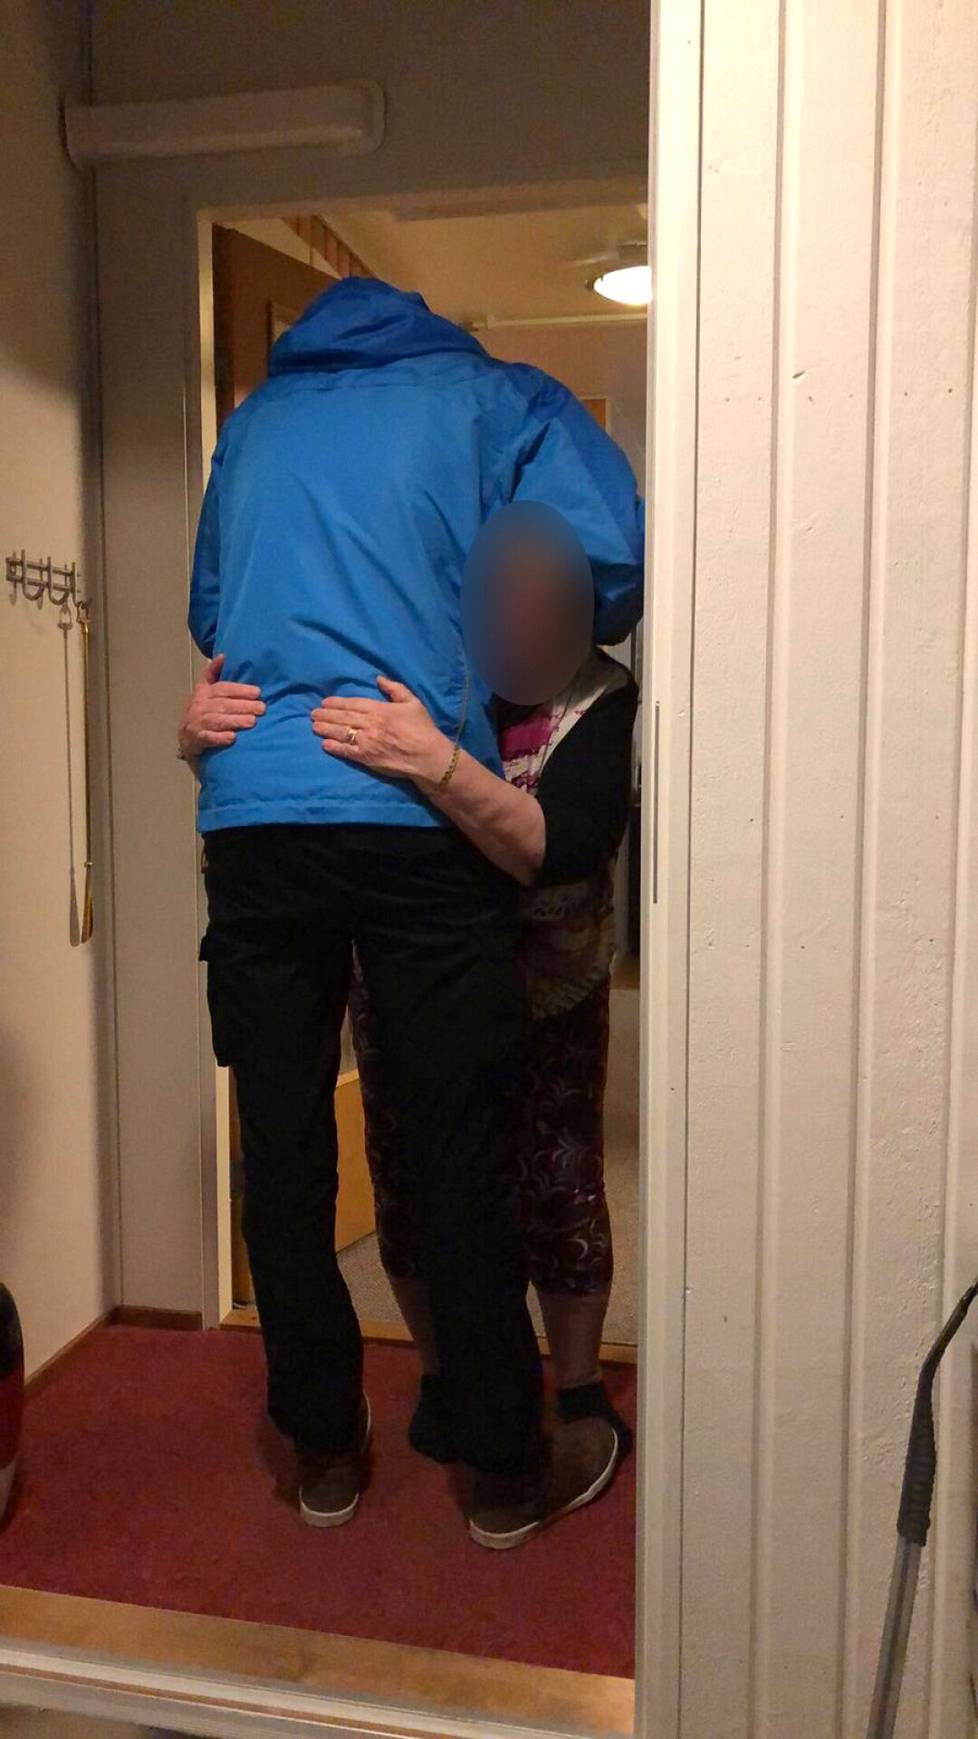 Jani halaa rakasta mummoaan. Äidille tämä kuva on rakas ja hellyttävä, kun pitkä, 190-senttinen poika joutuu kumartumaan mummon halaukseen. 